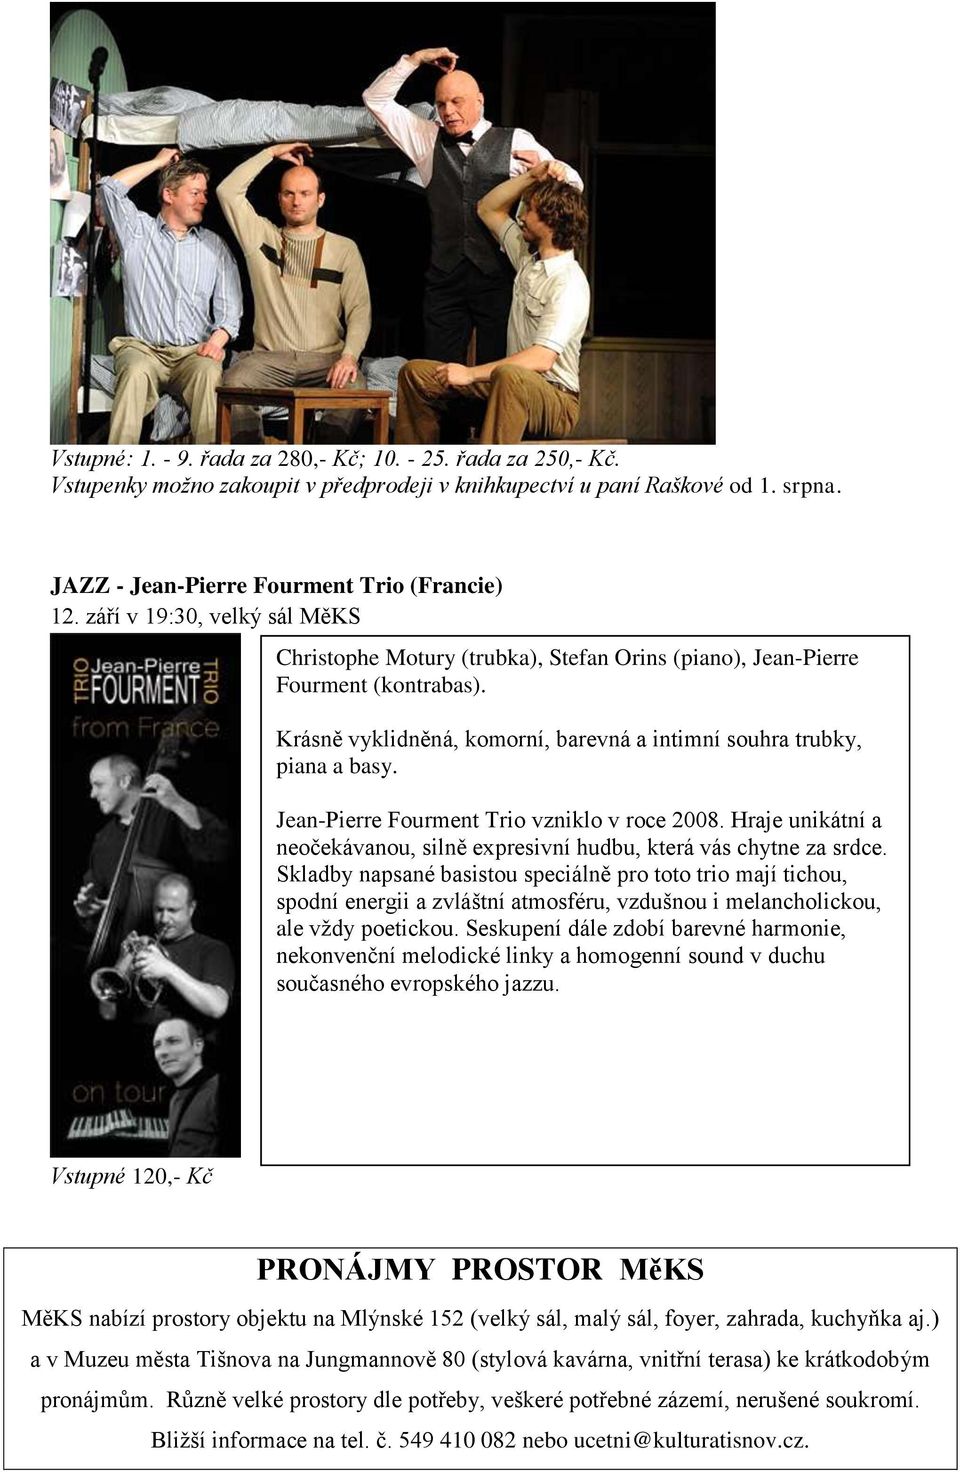 Jean-Pierre Fourment Trio vzniklo v roce 2008. Hraje unikátní a neočekávanou, silně expresivní hudbu, která vás chytne za srdce.